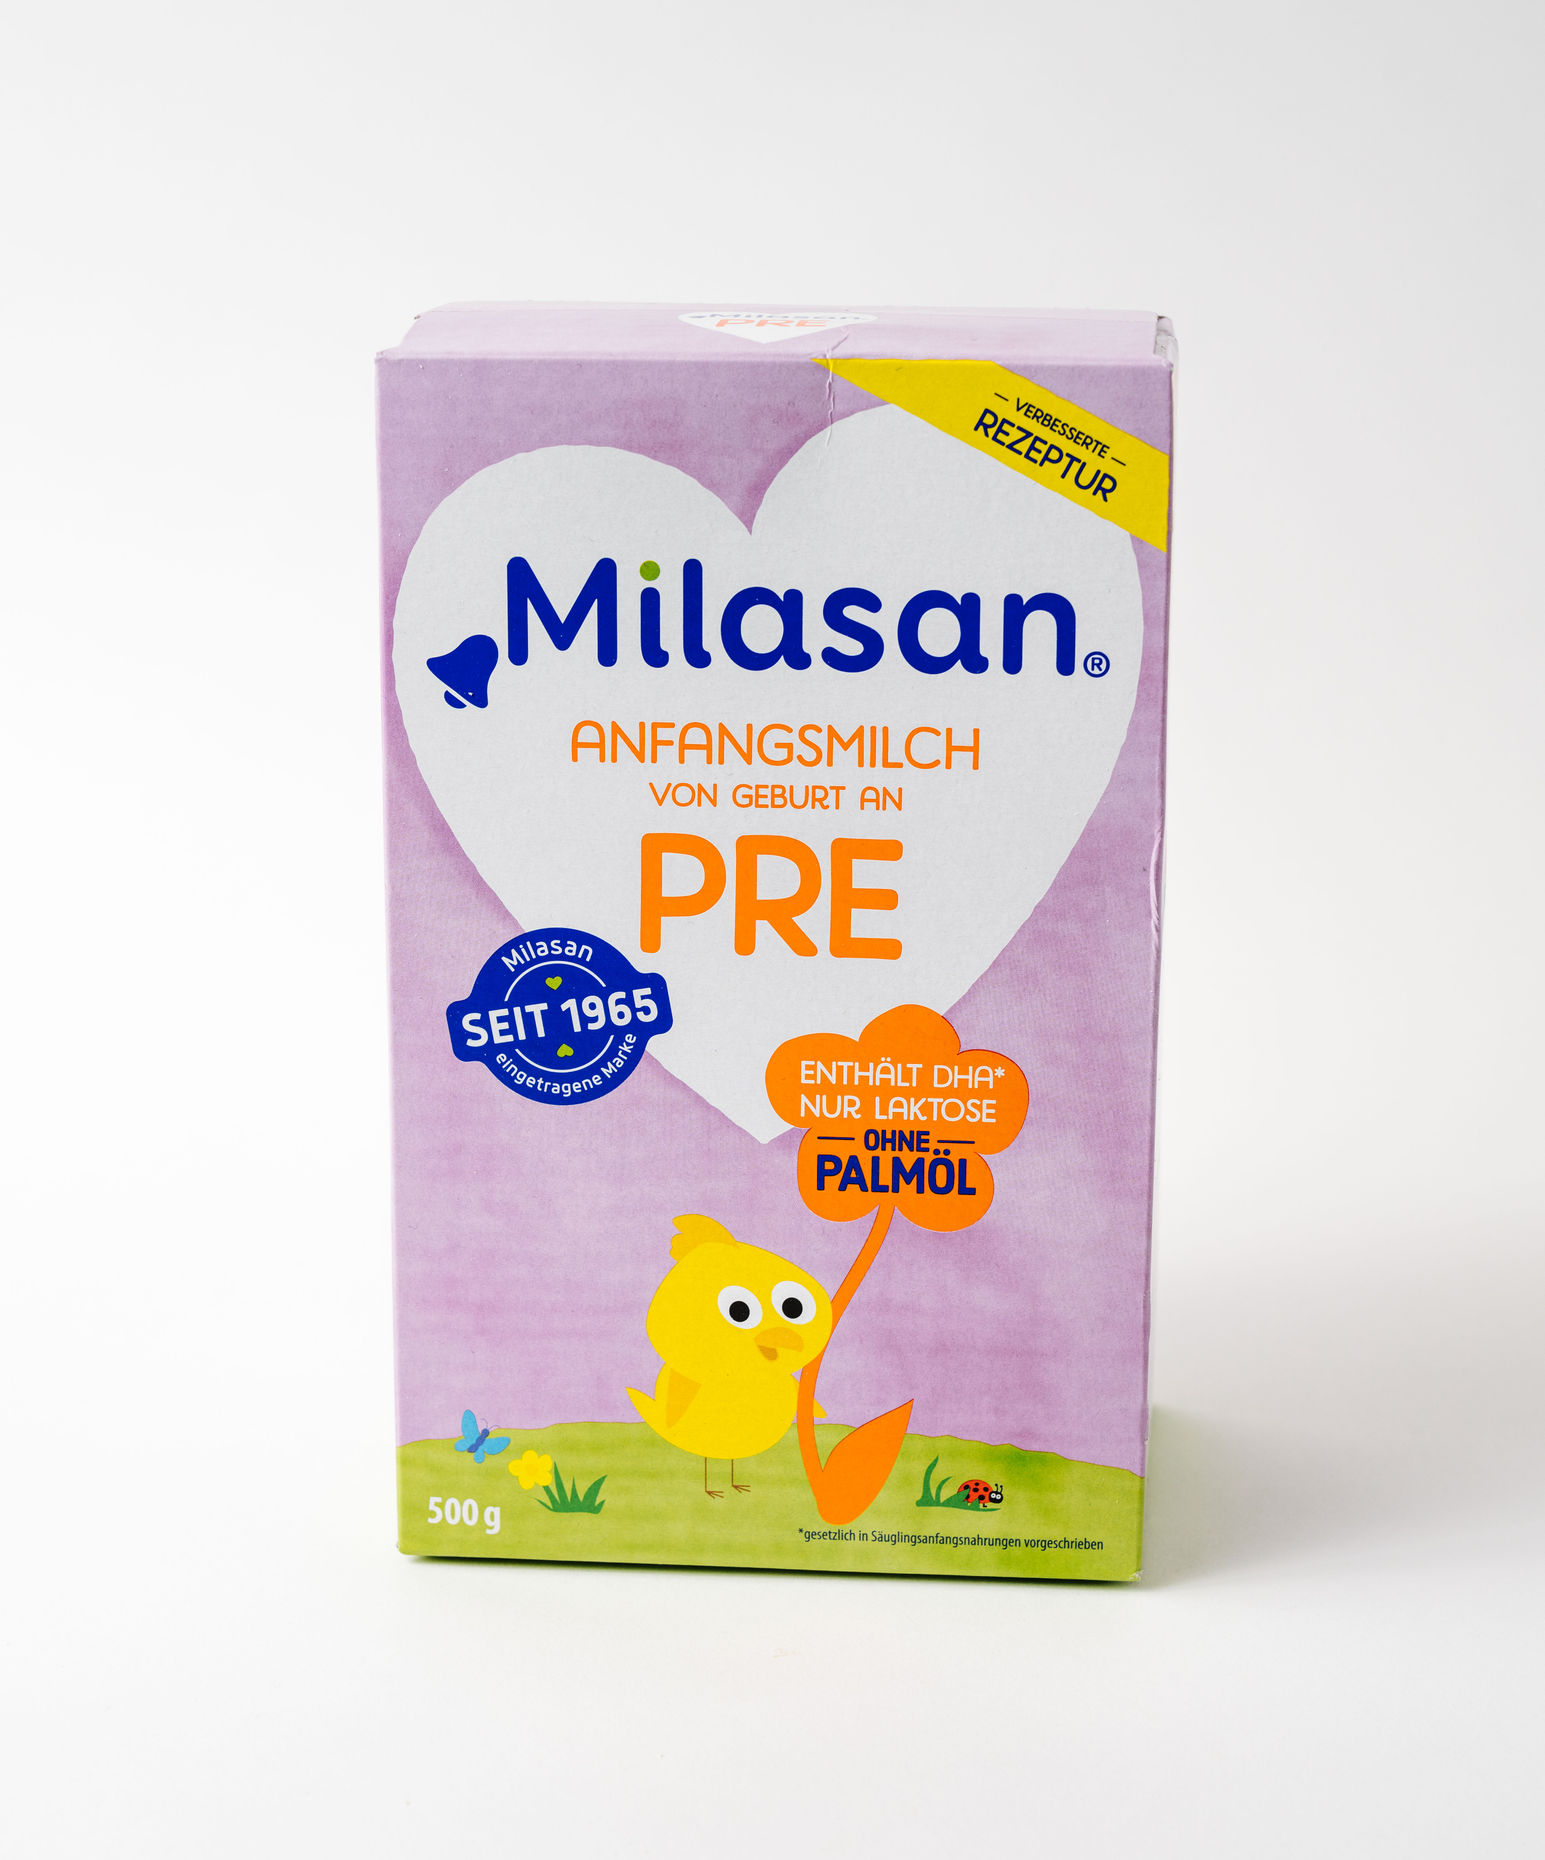 Milram Milchnahrung für Säuglinge